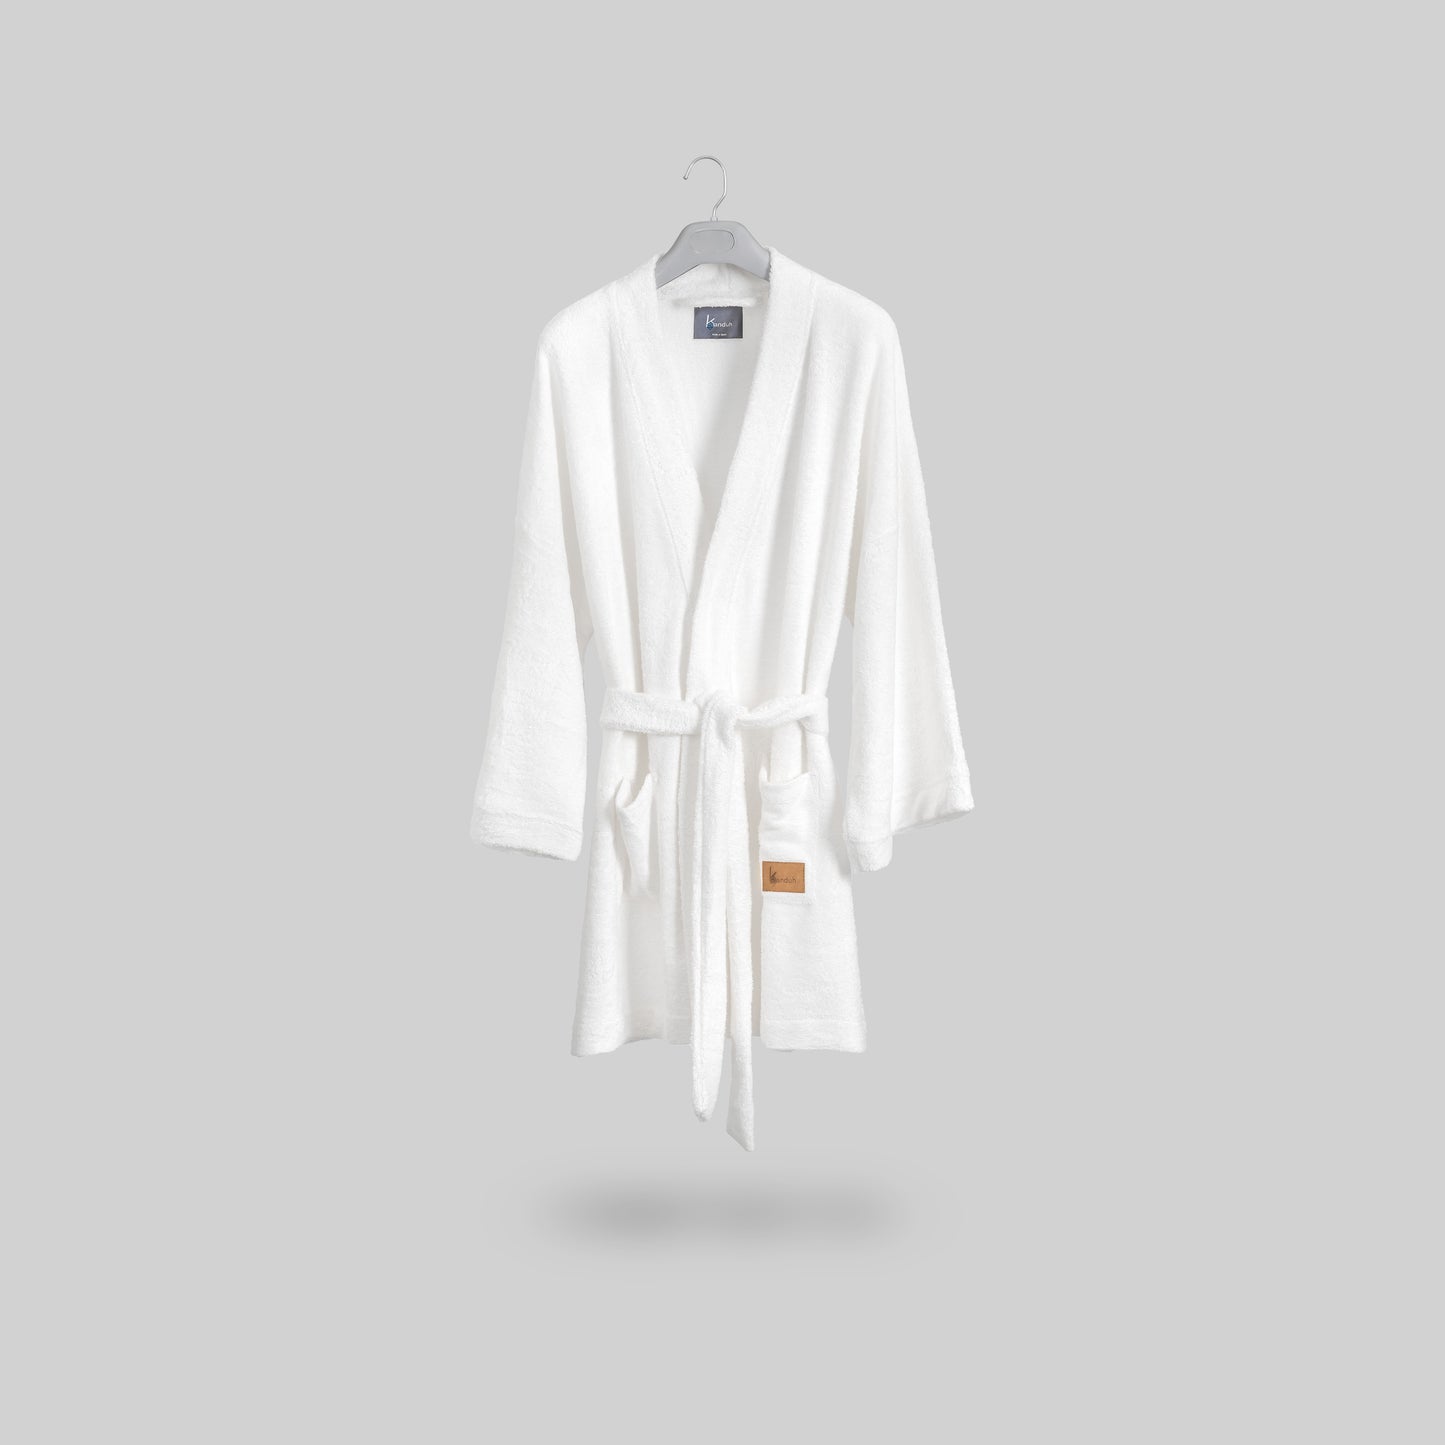 “Albornoz Sento” Albornoz corto tipo kimono en tejido de rizo de bambú, color blanco